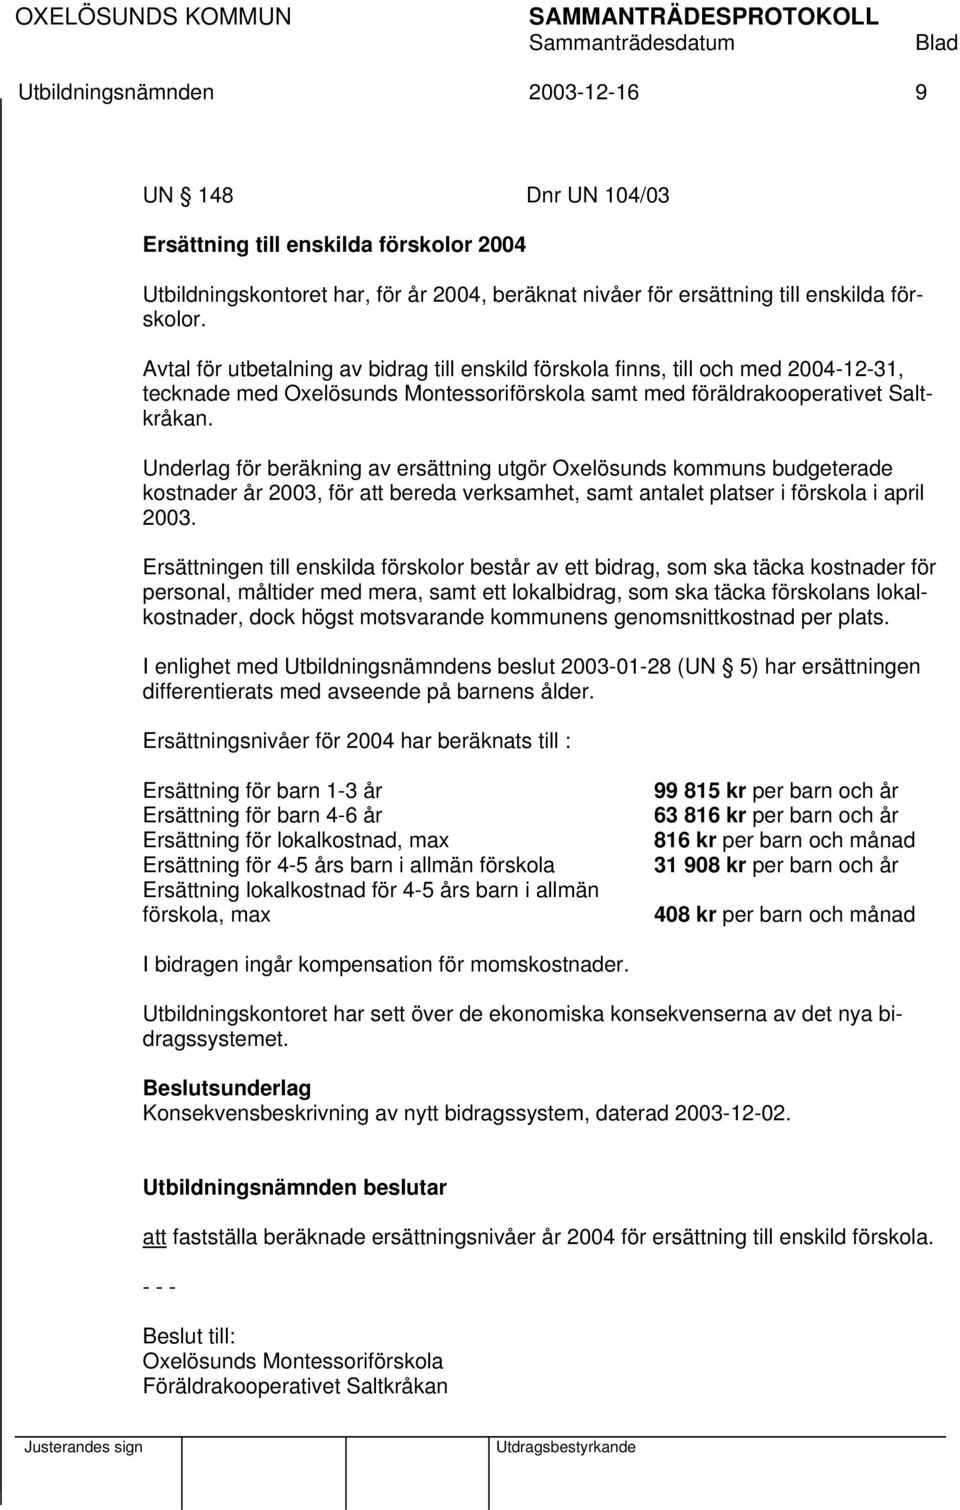 Underlag för beräkning av ersättning utgör Oxelösunds kommuns budgeterade kostnader år 2003, för att bereda verksamhet, samt antalet platser i förskola i april 2003.